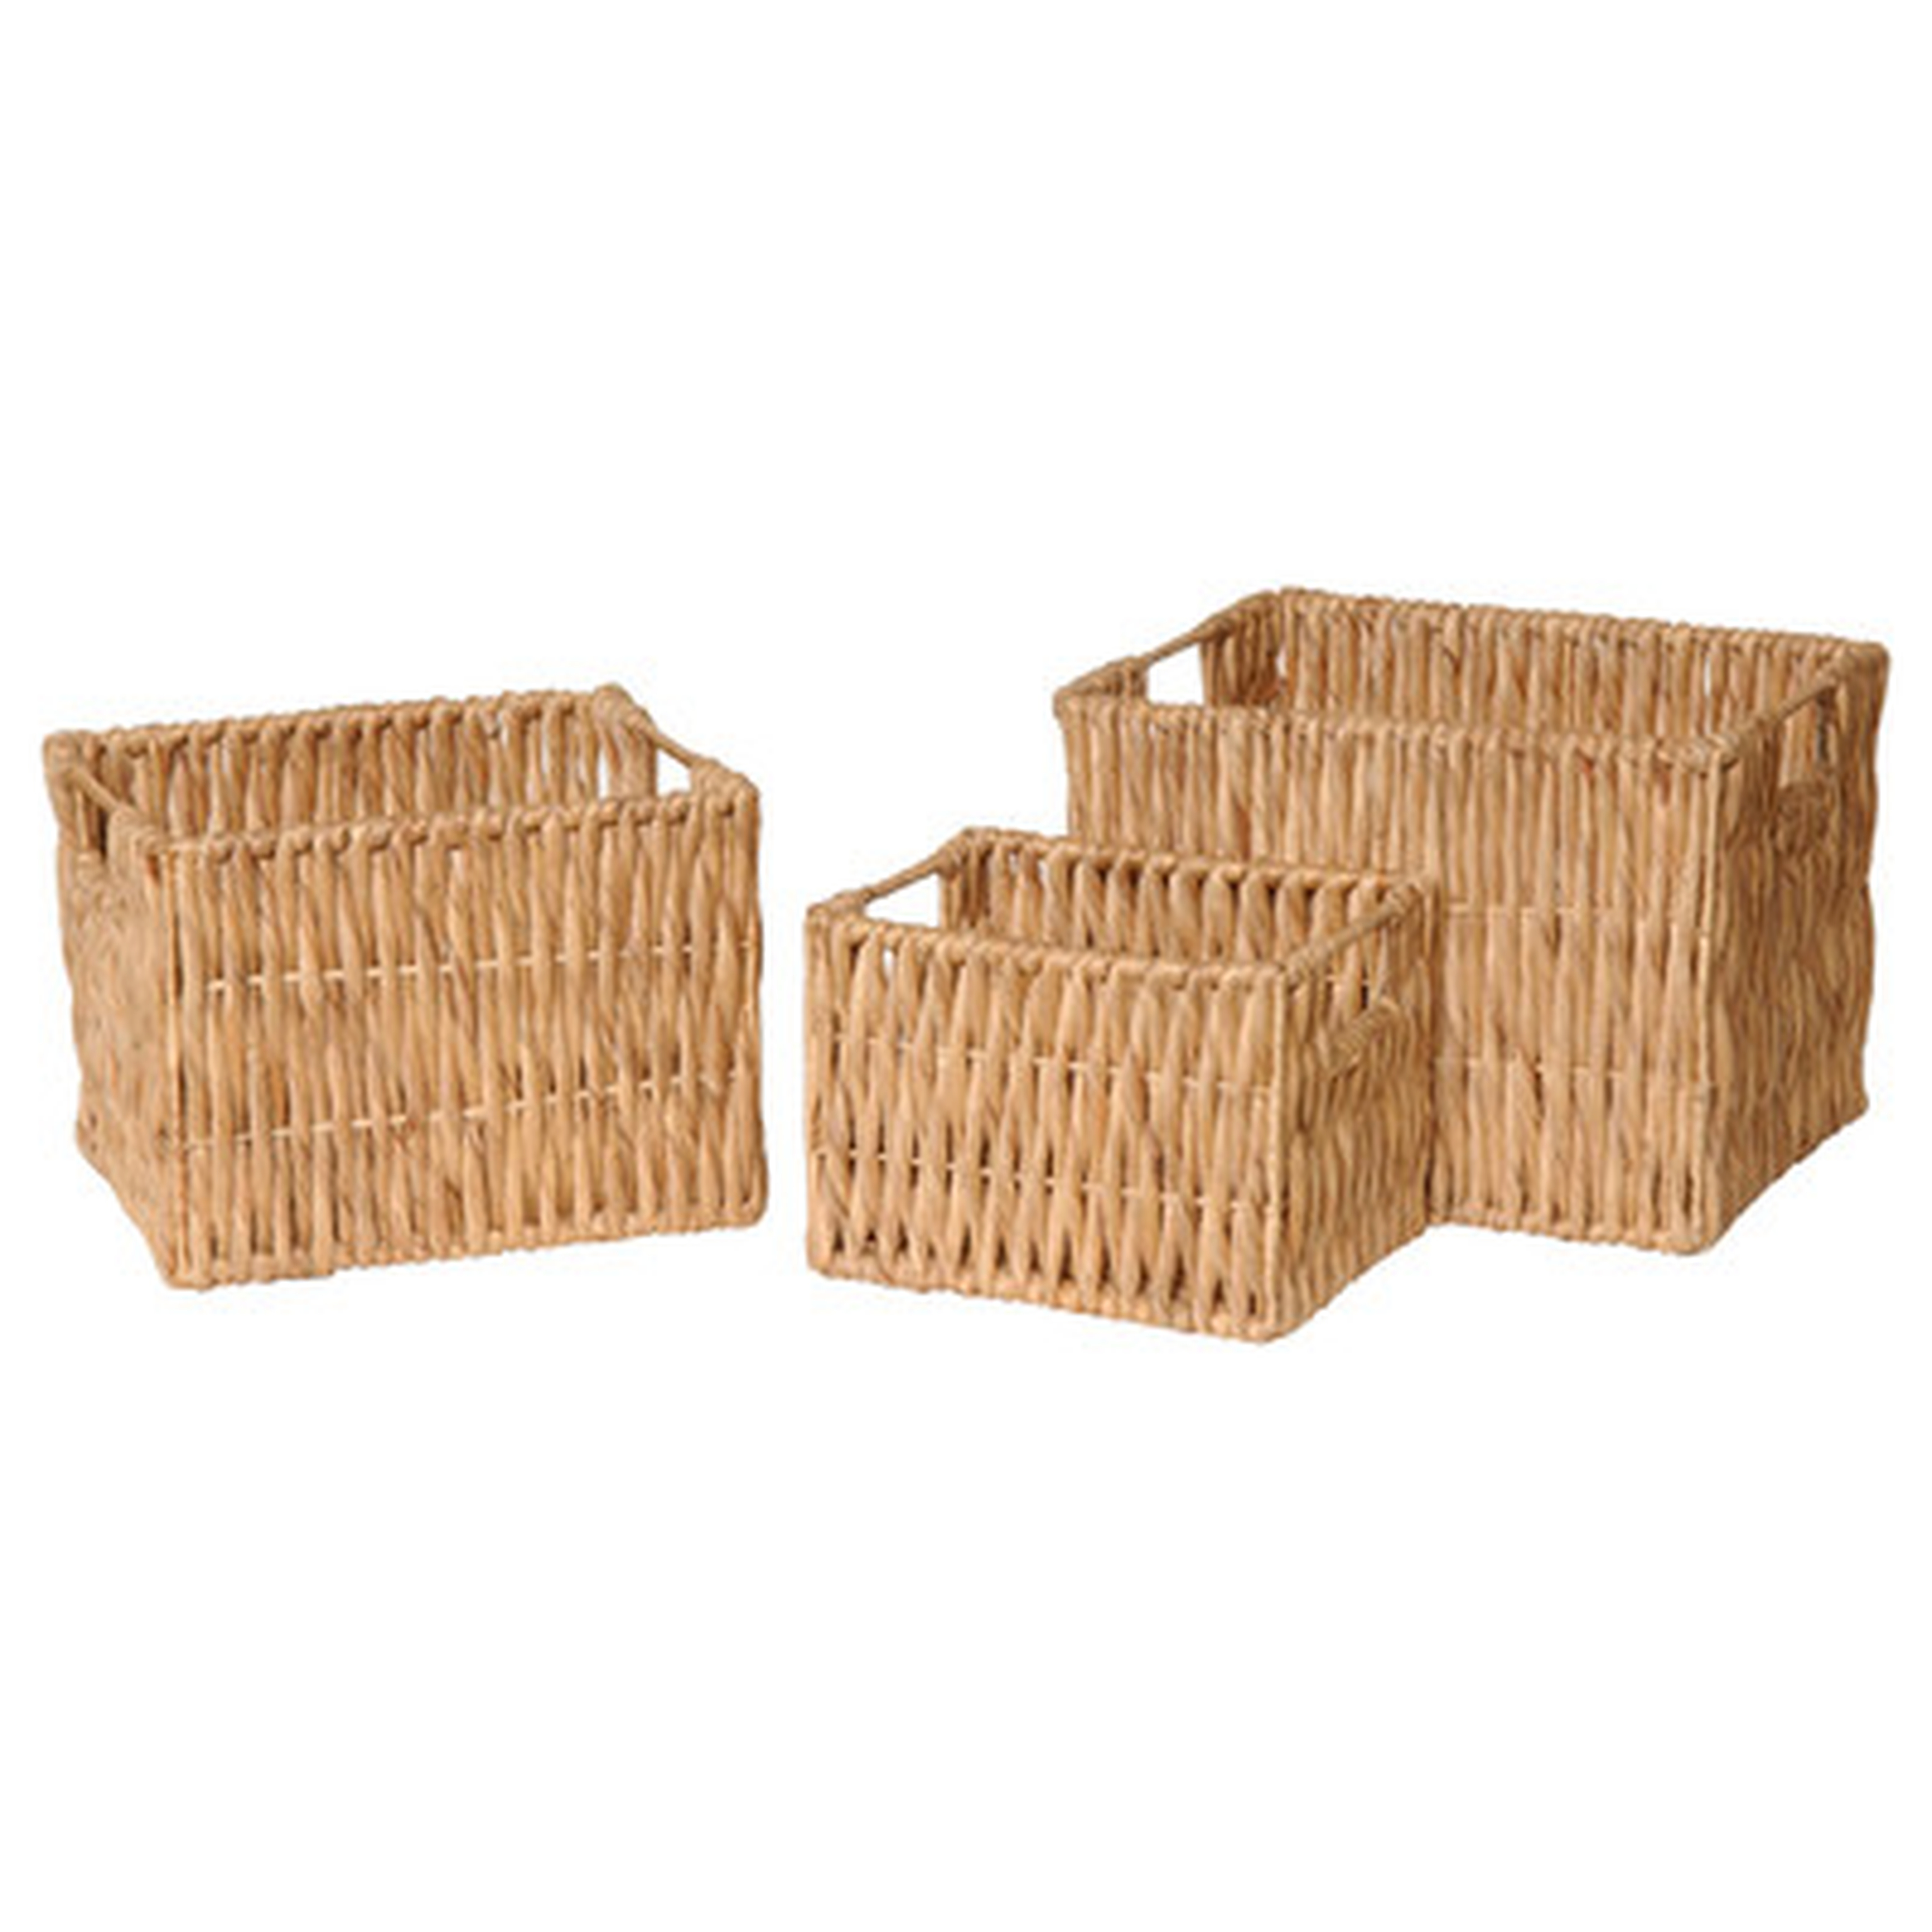 3 Piece Rectangle Water Hyacinth Basket Set - Wayfair